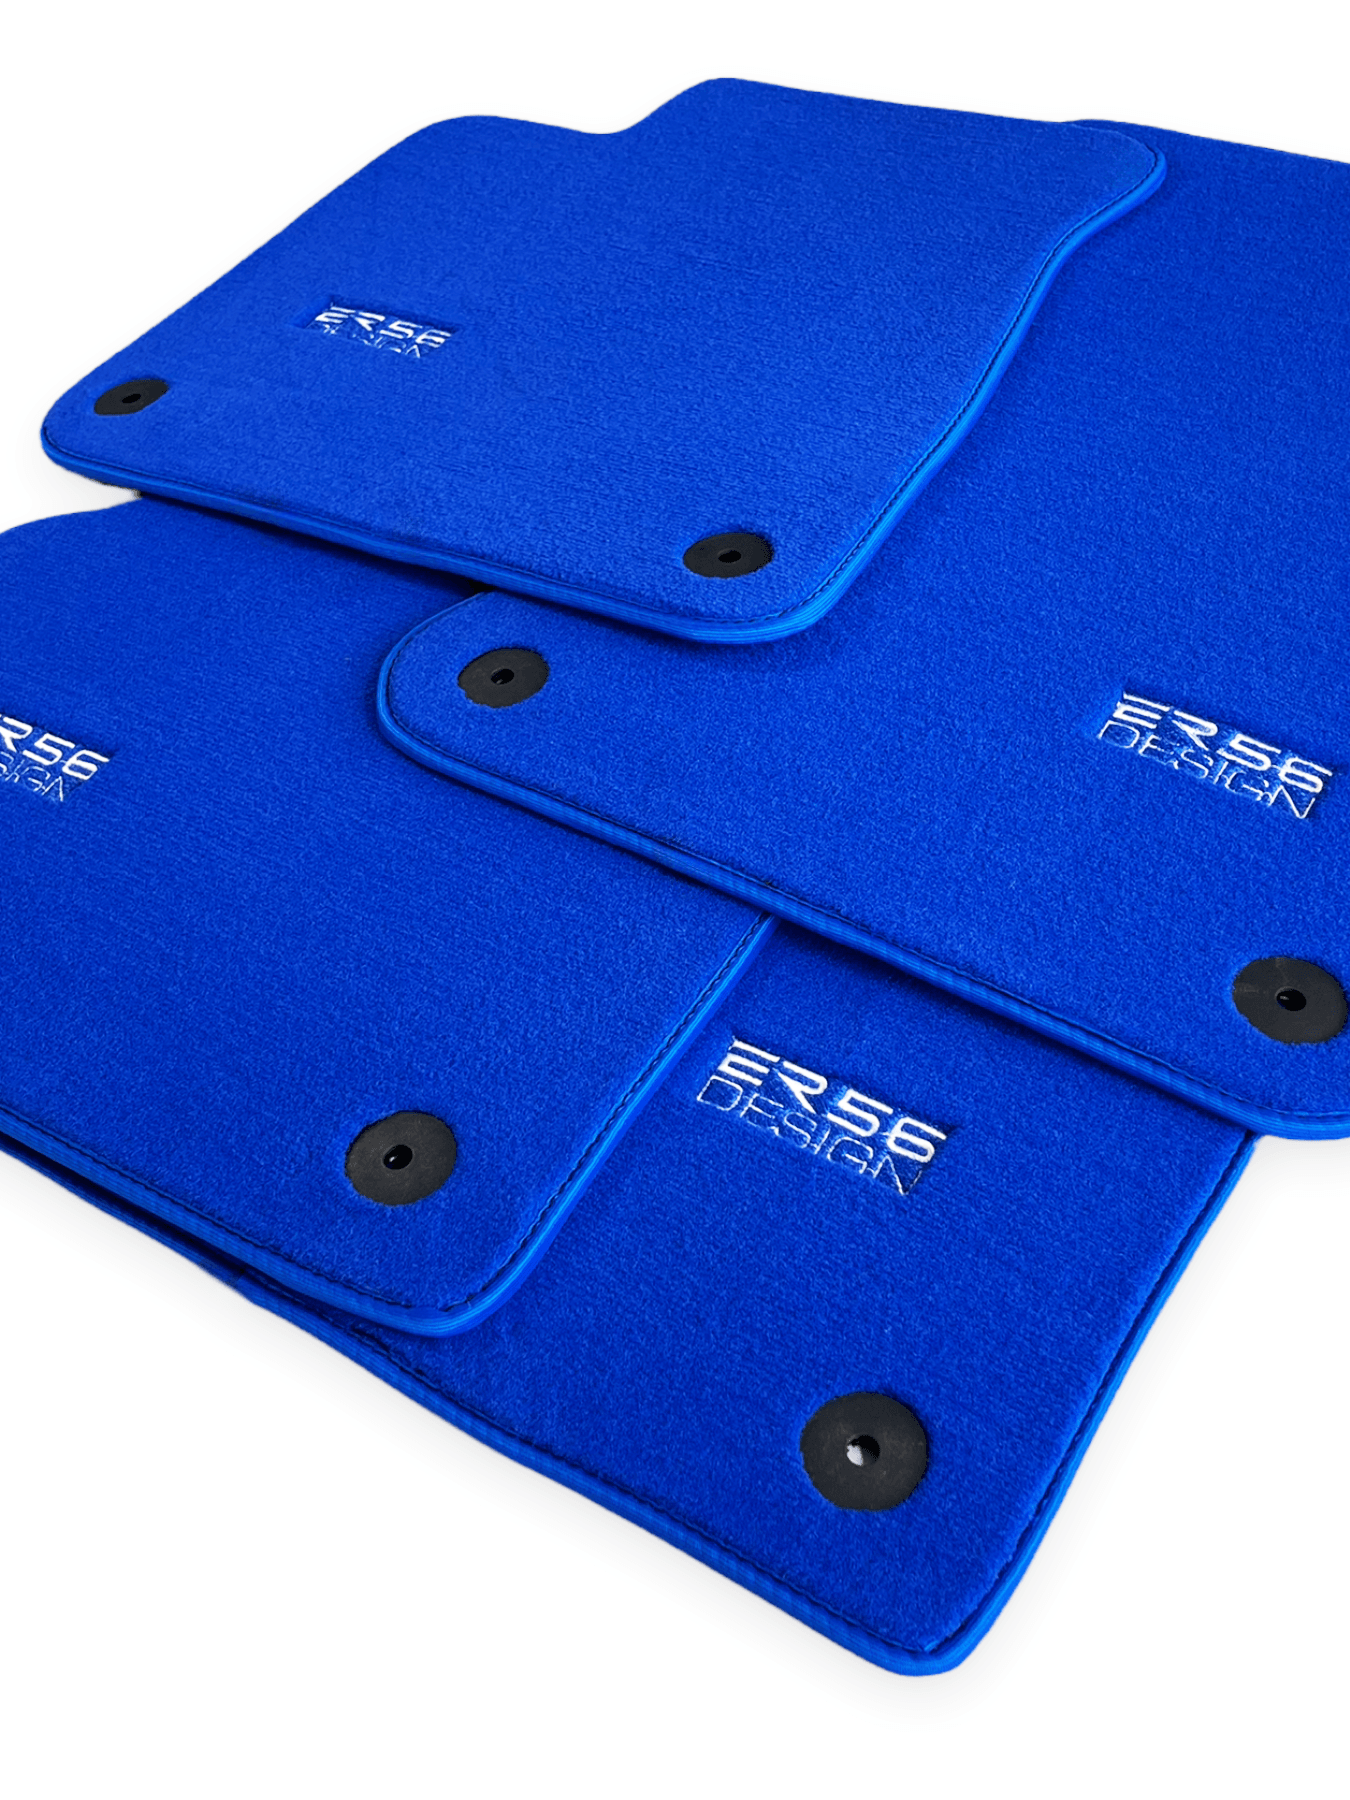 Blue Floor Mats for Audi A3 - Convertible (2014-2020) | ER56 Design